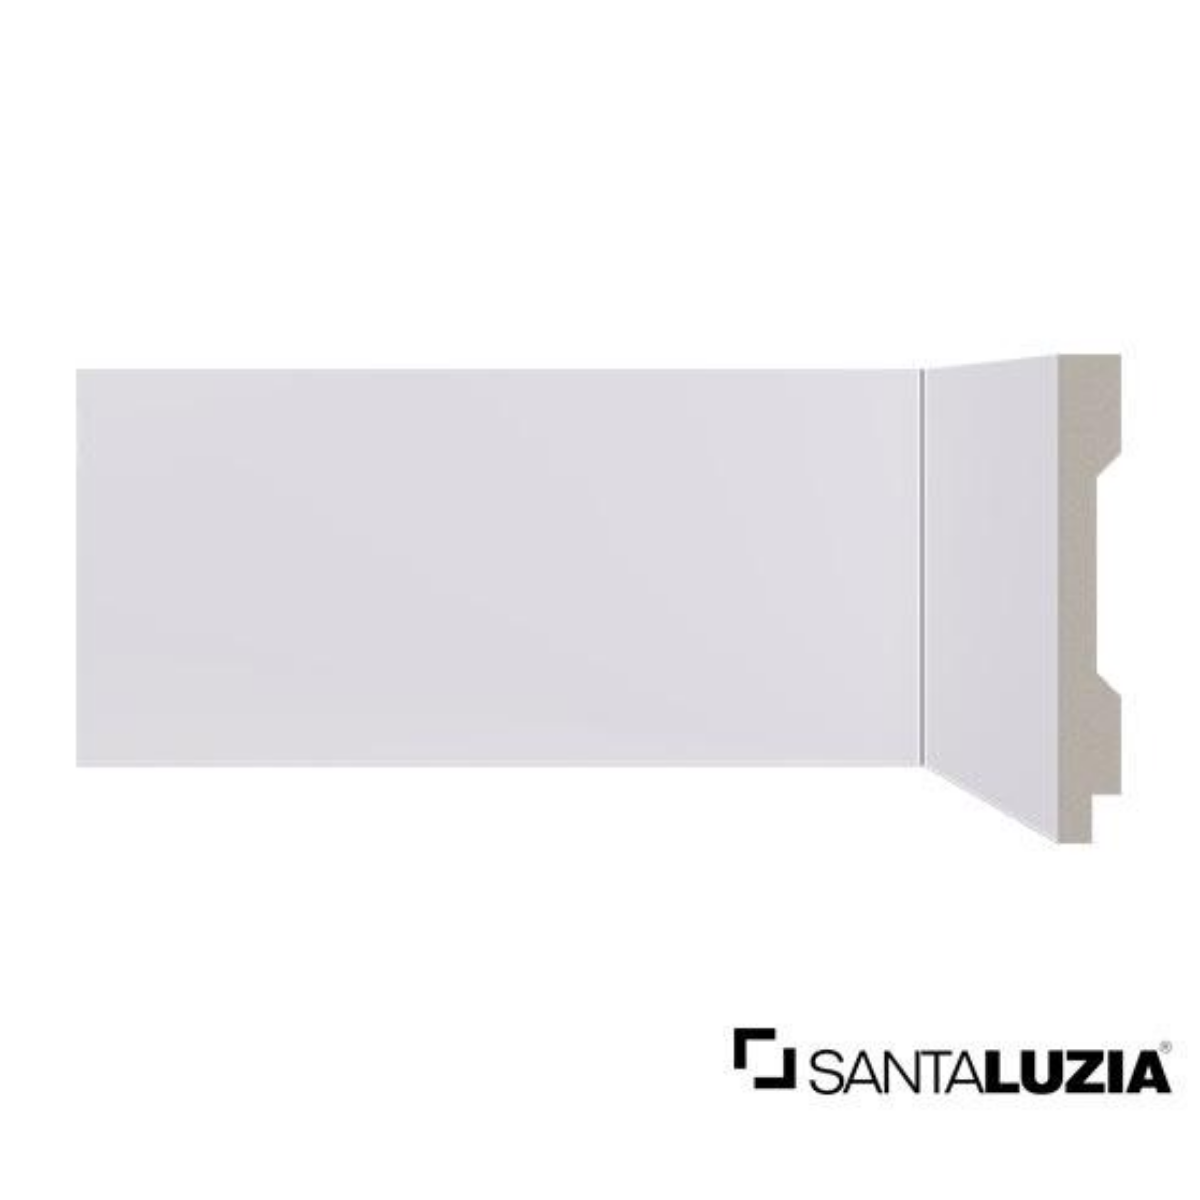 Rodape 7cm Liso Branco Poliestireno Lev71 - Santa Luzia - 1